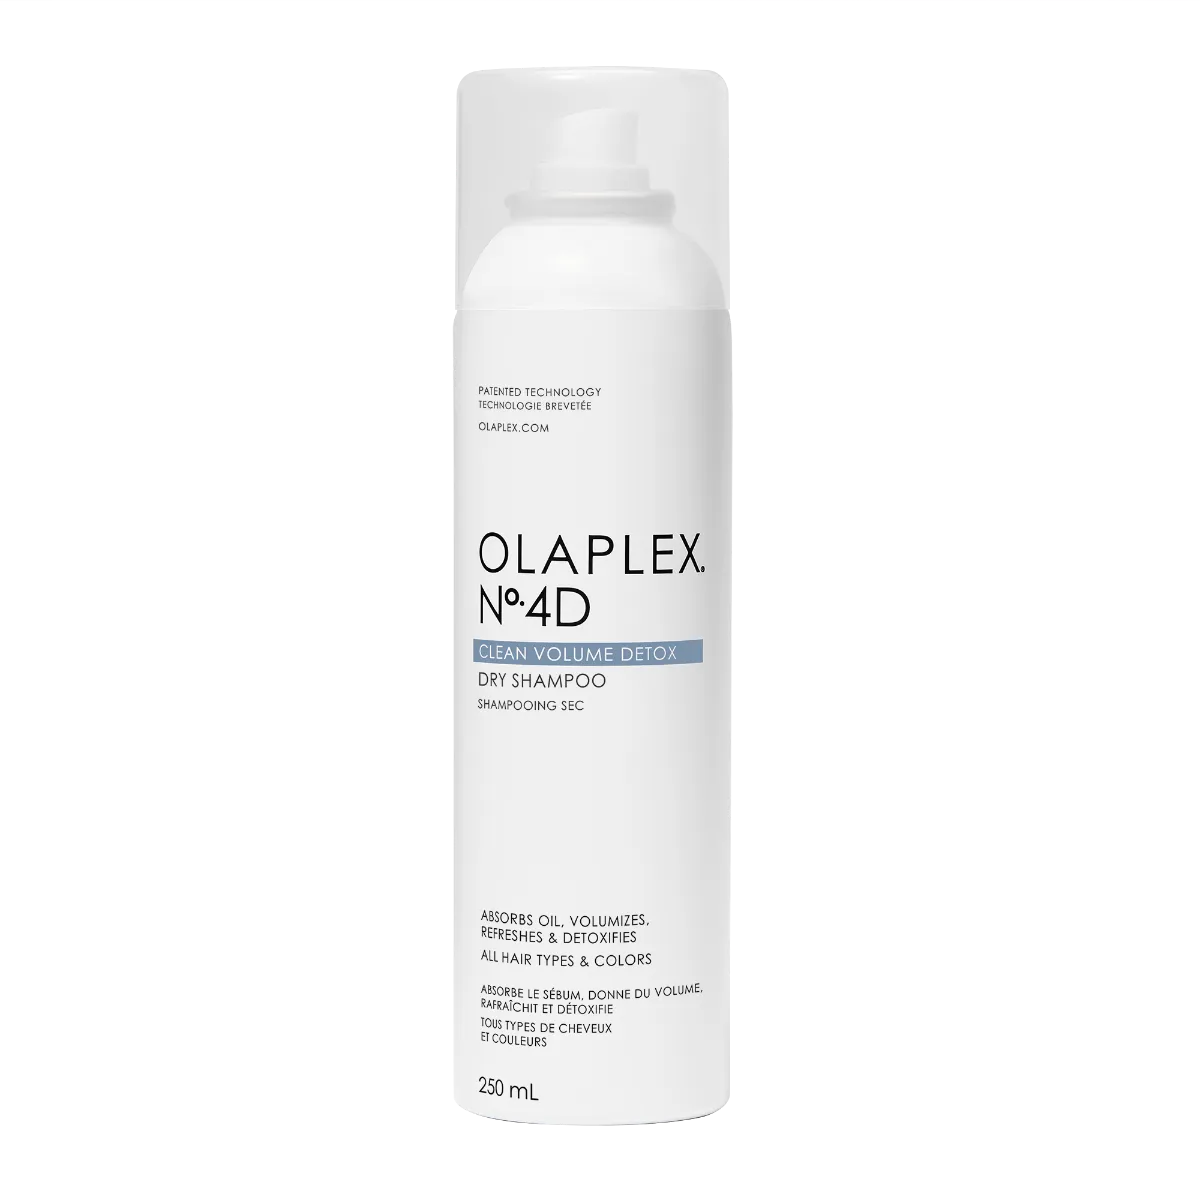 Olaplex N4D Clean Volume Detox Dry Shampoo 250 Ml Shampoo secco